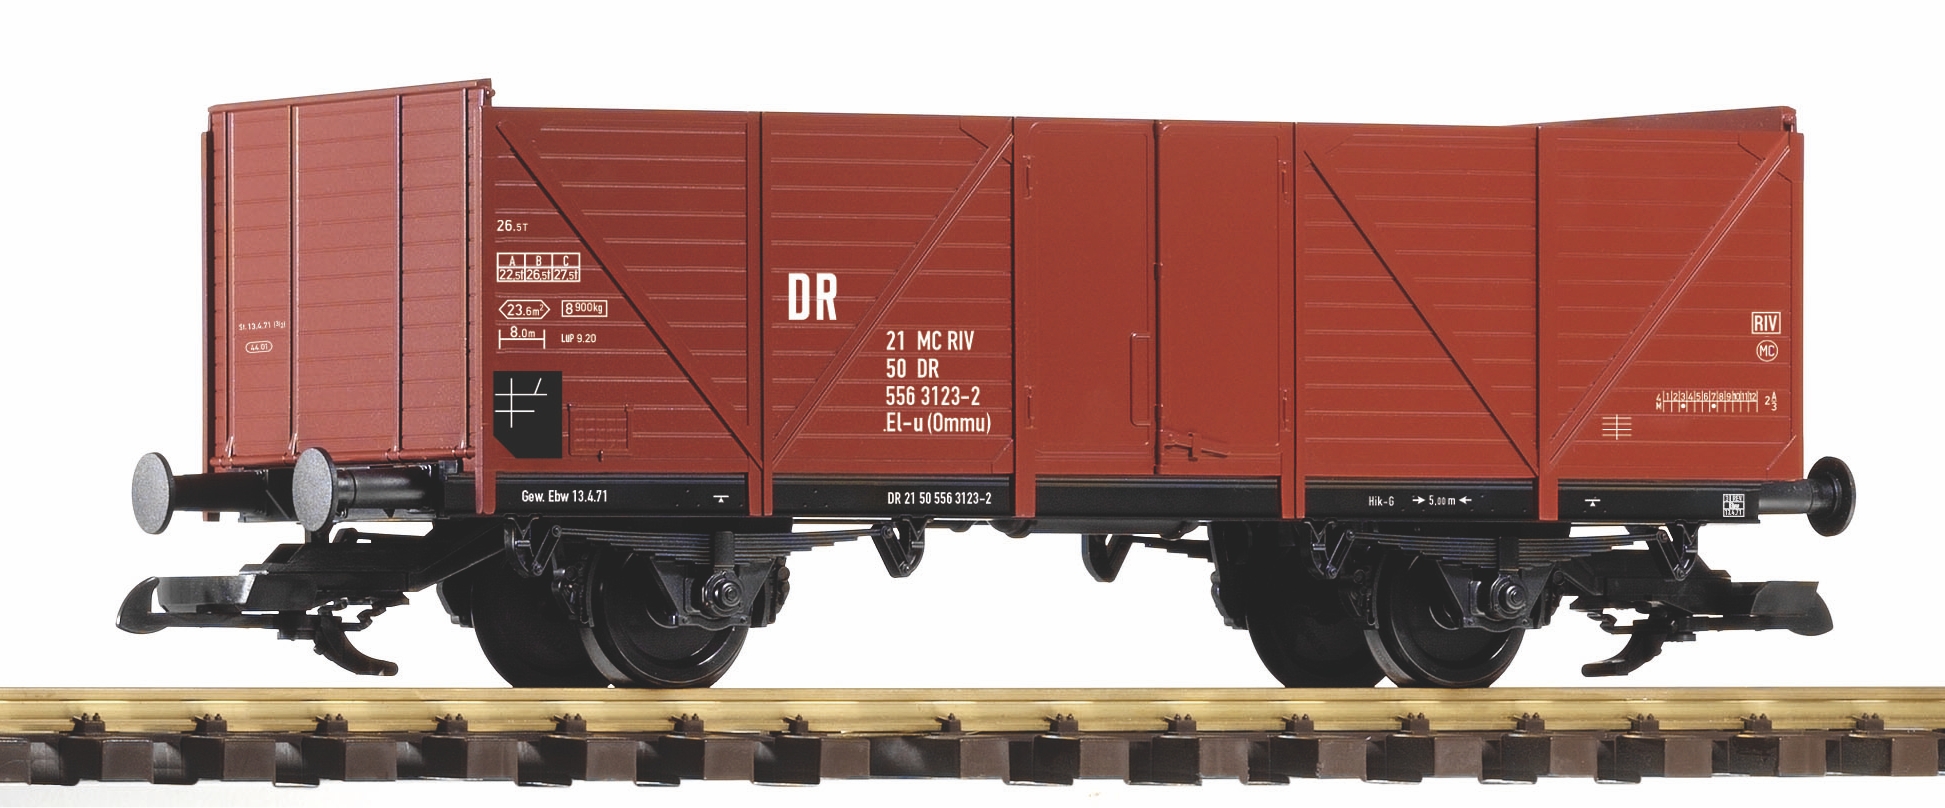 G Offener Güterwagen DR IV, PIKO 37663, Wagennummer 556 3123-2 - 21 MC RIV, 50DR , El-u (Ommu) 